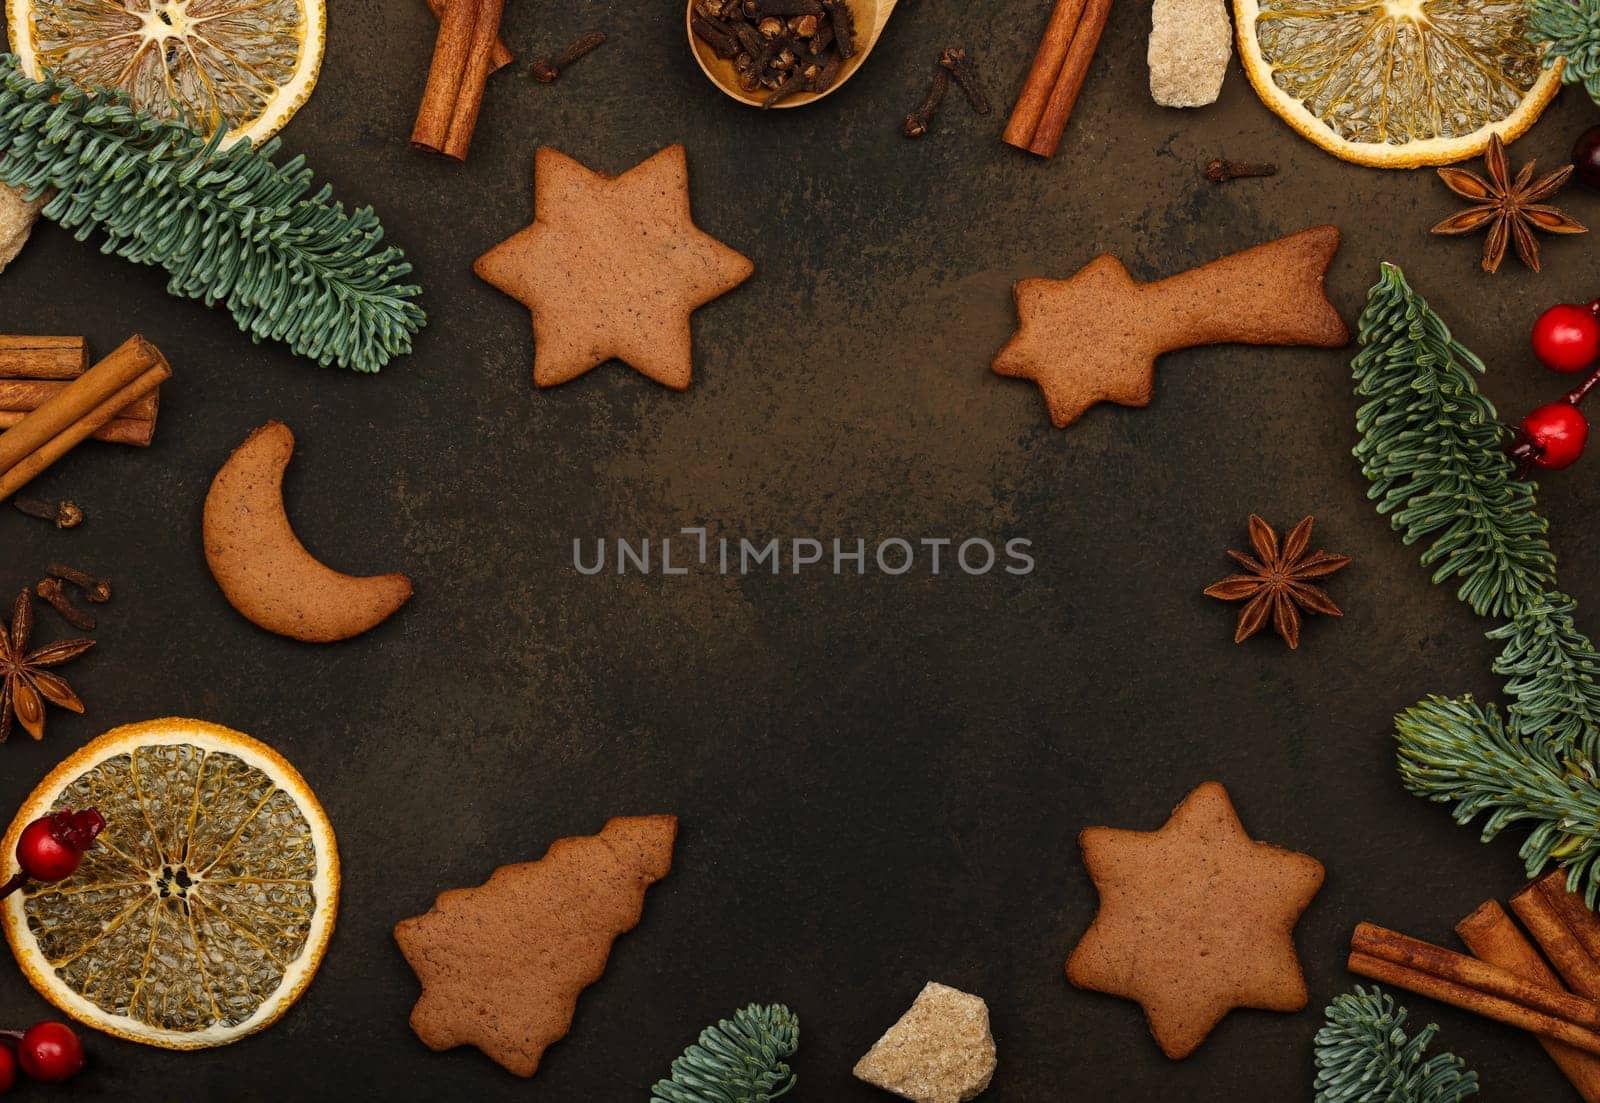 Making gingerbread Christmas cookies by BreakingTheWalls